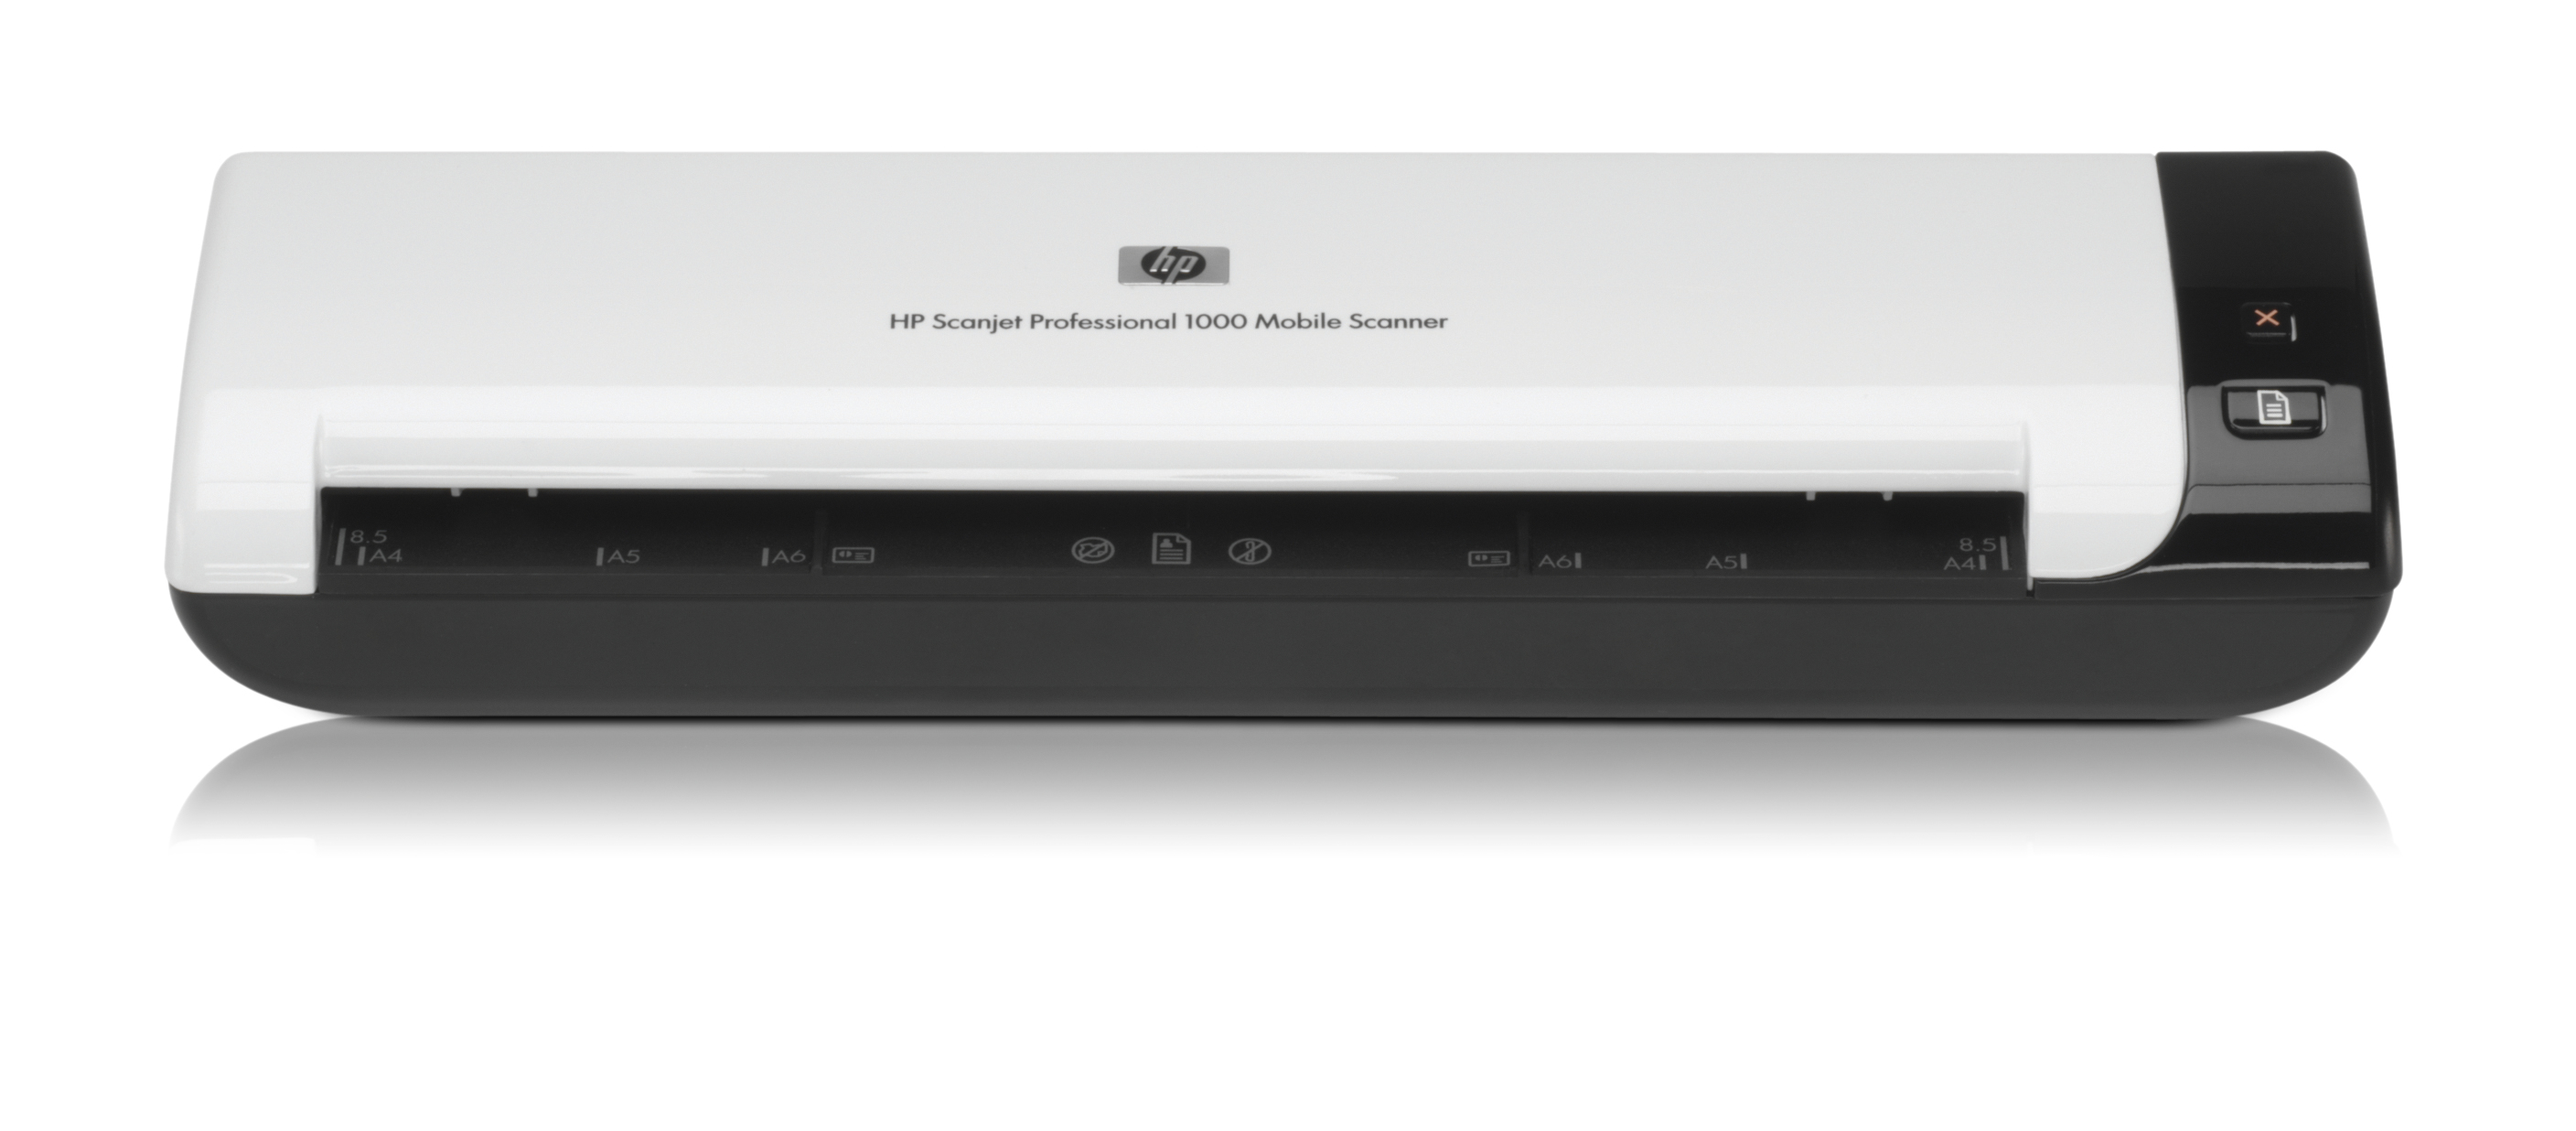 HP Scanjet Professional 3000 Dokumentenscanner USB 2.0 weiß/schwarz